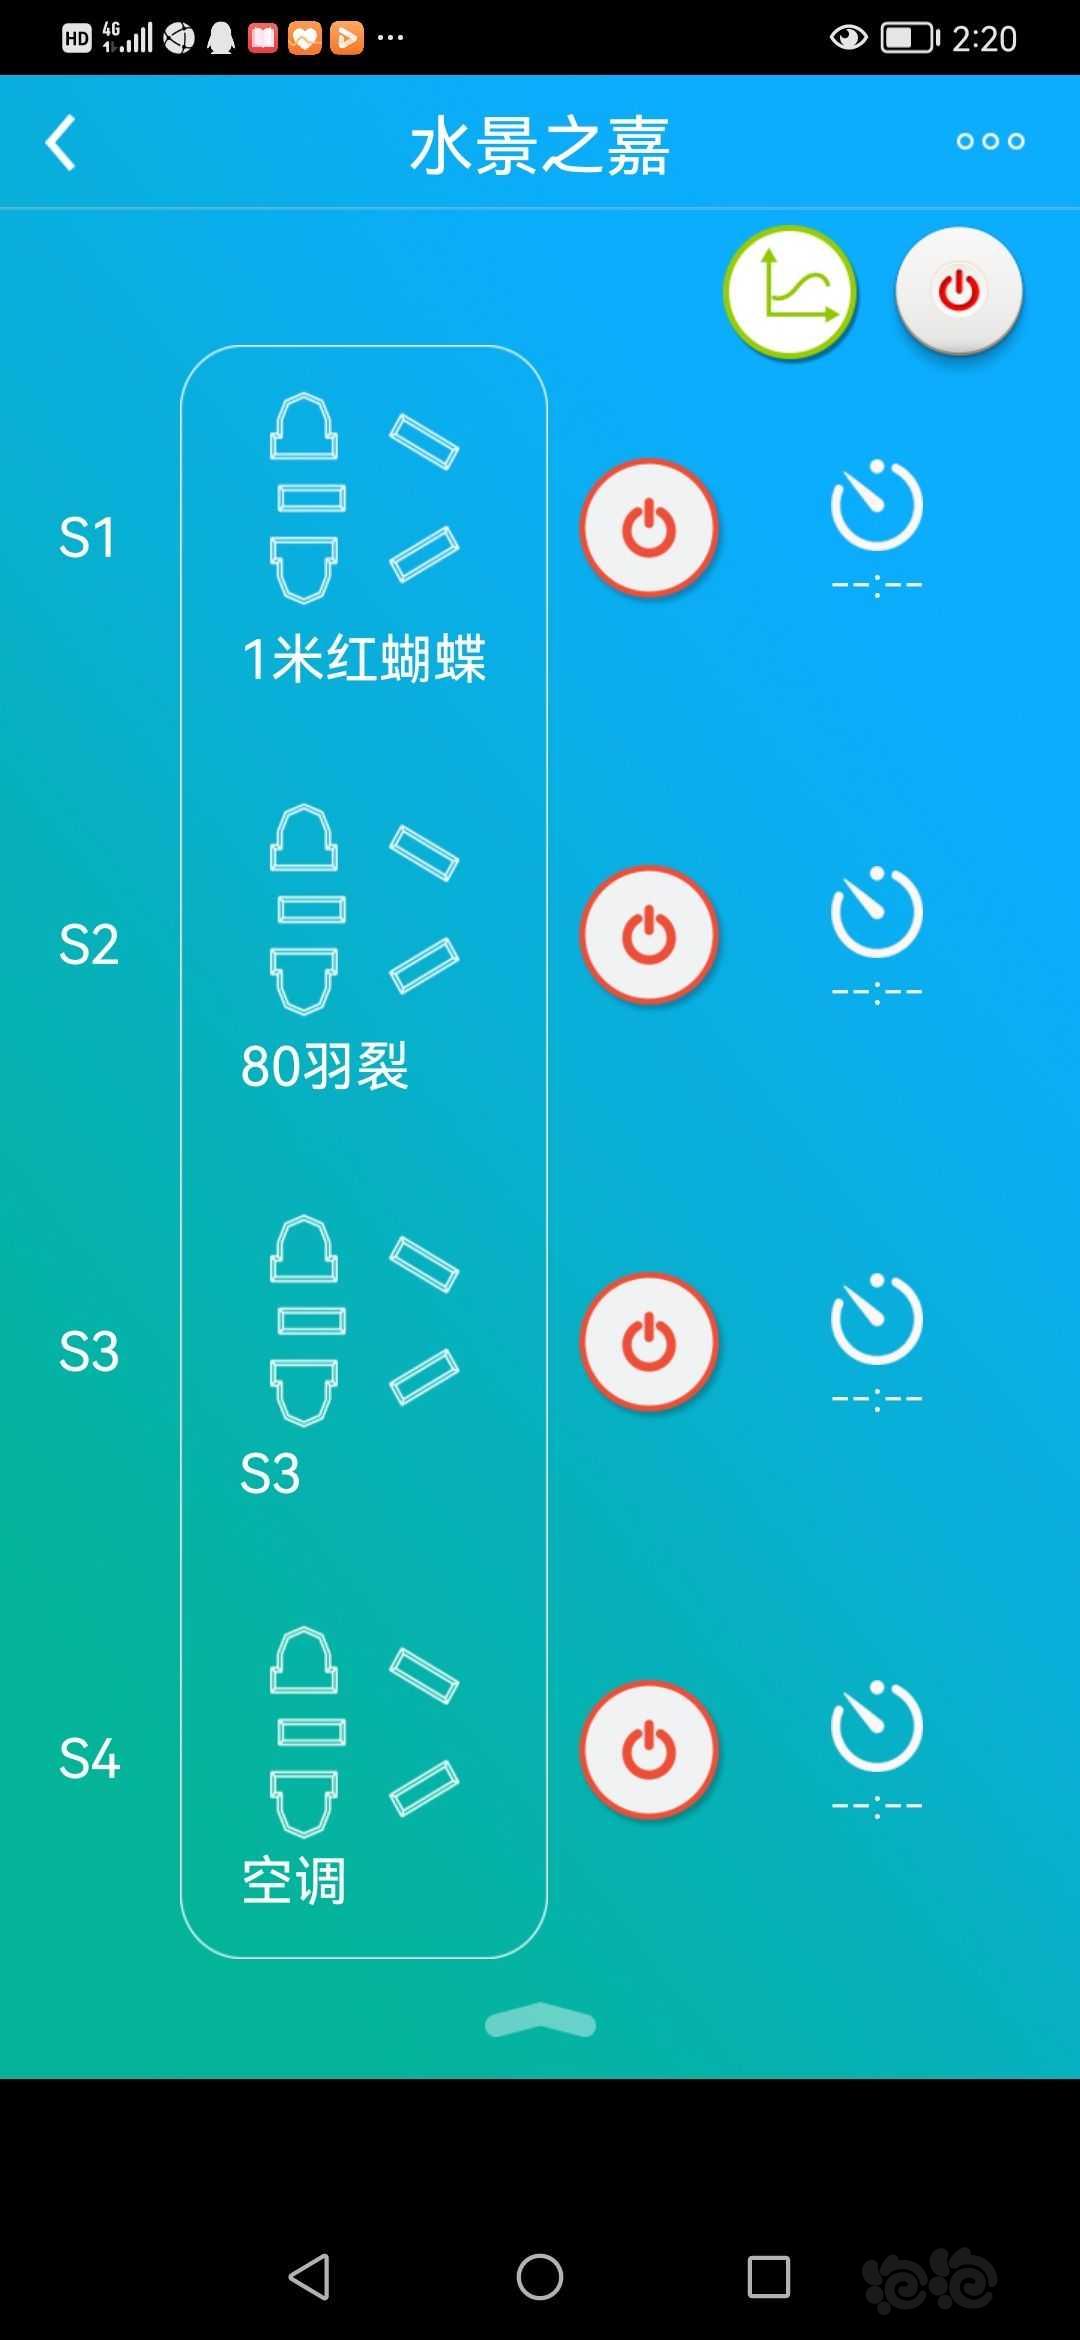 【求购】收鸿雁智控老版本app-图1